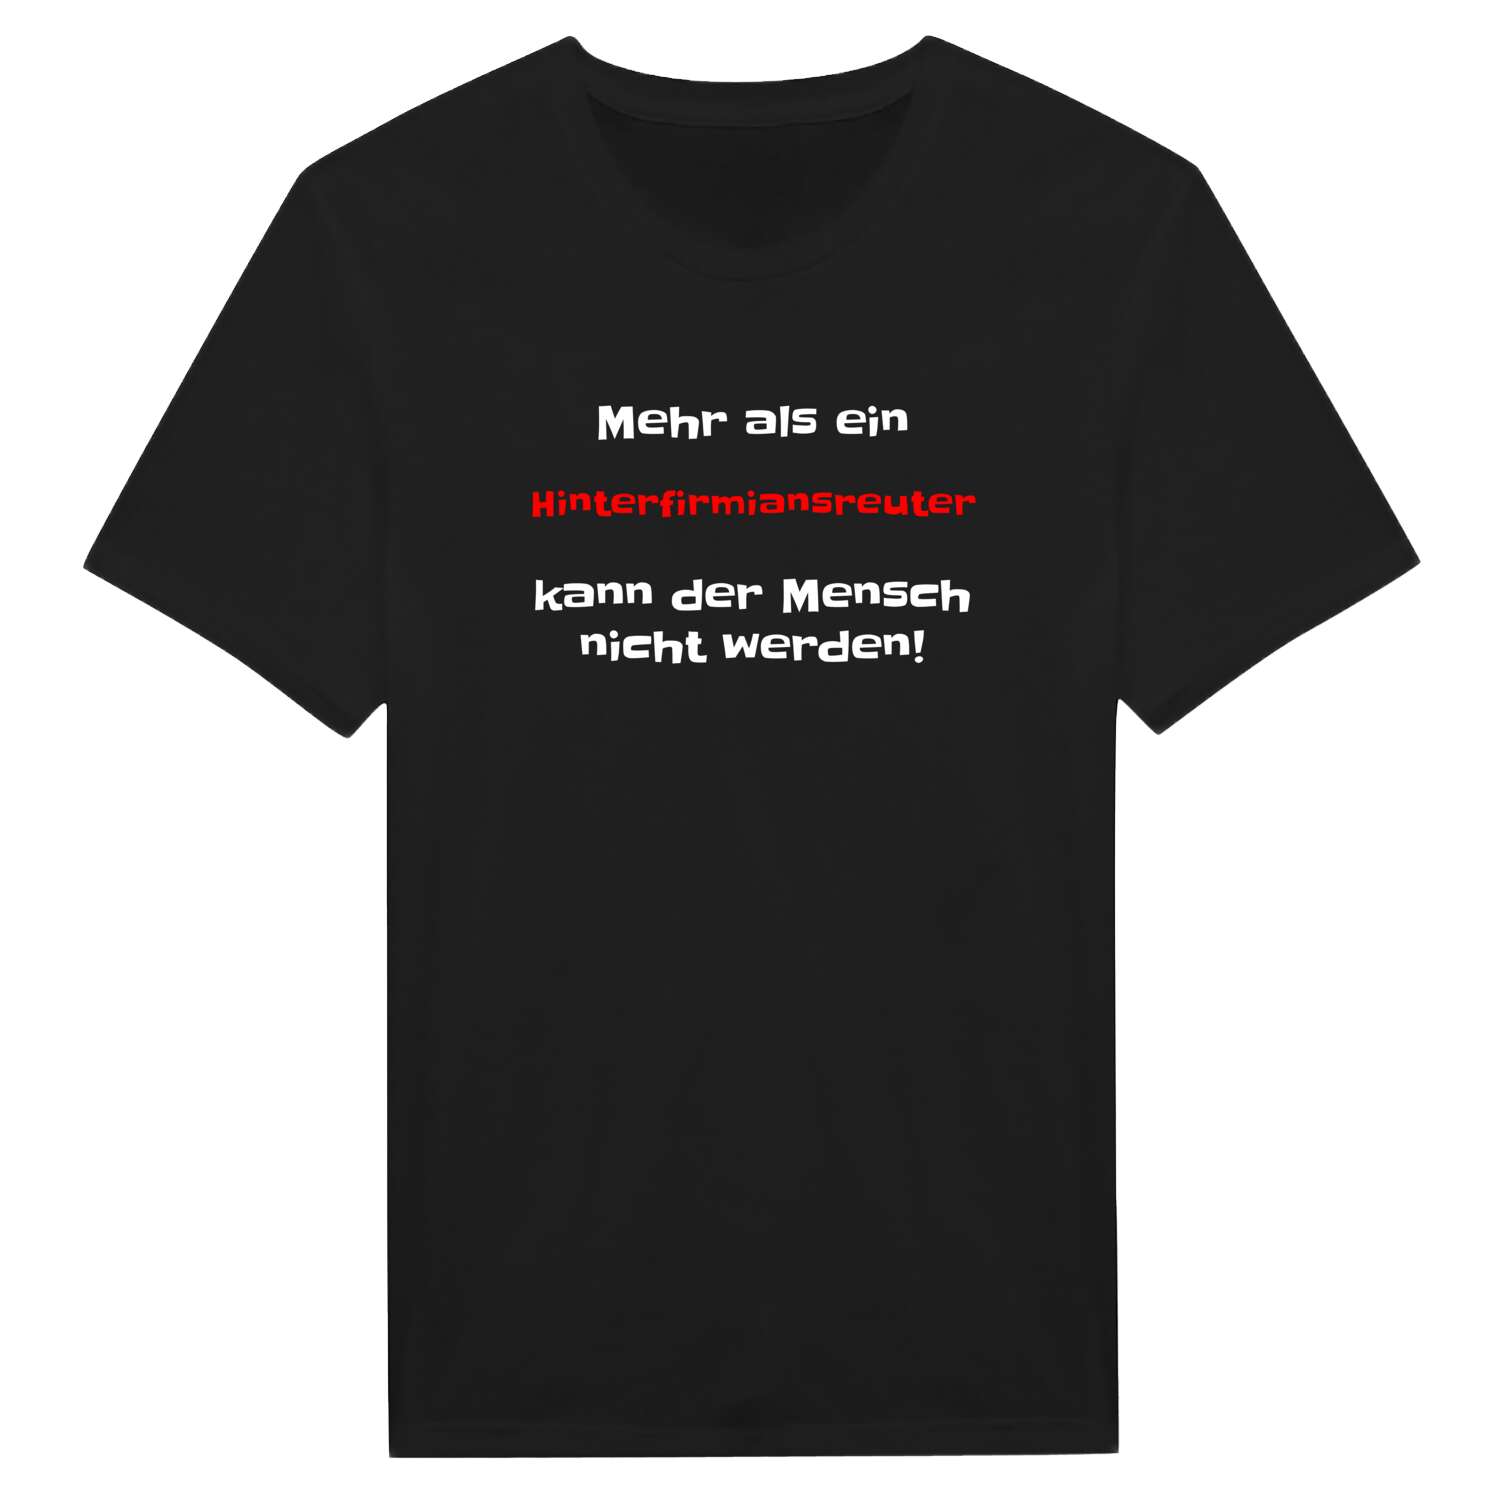 Hinterfirmiansreut T-Shirt »Mehr als ein«